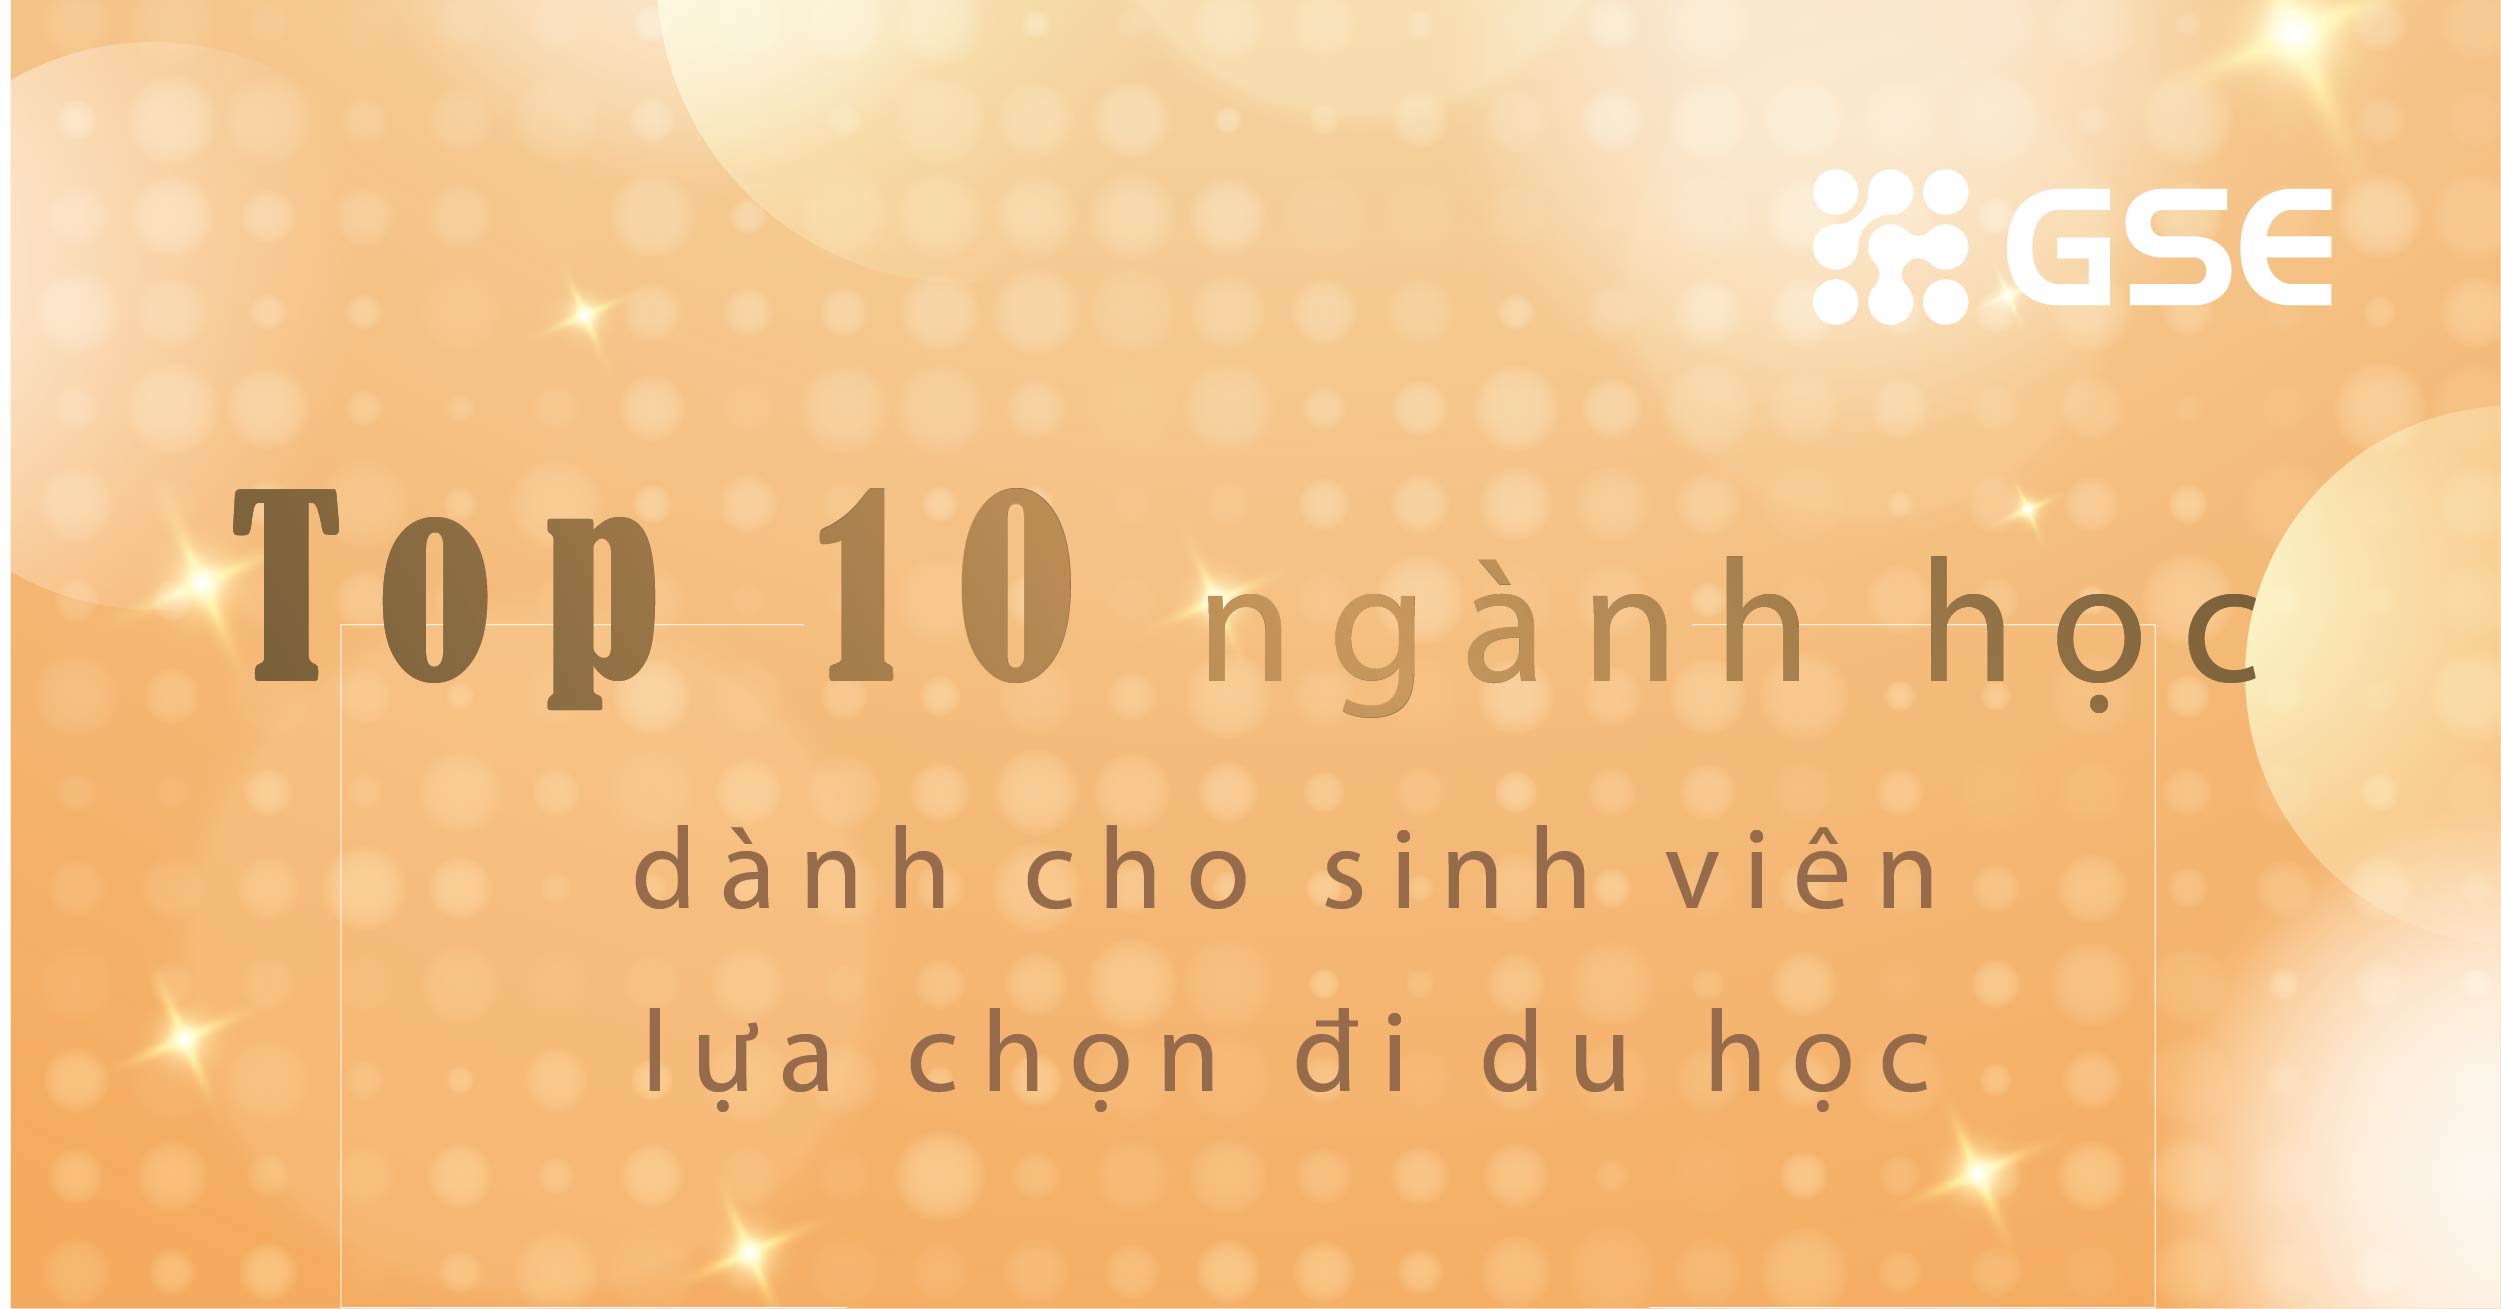 top 10 nganh hoc cho du hoc sinh 02